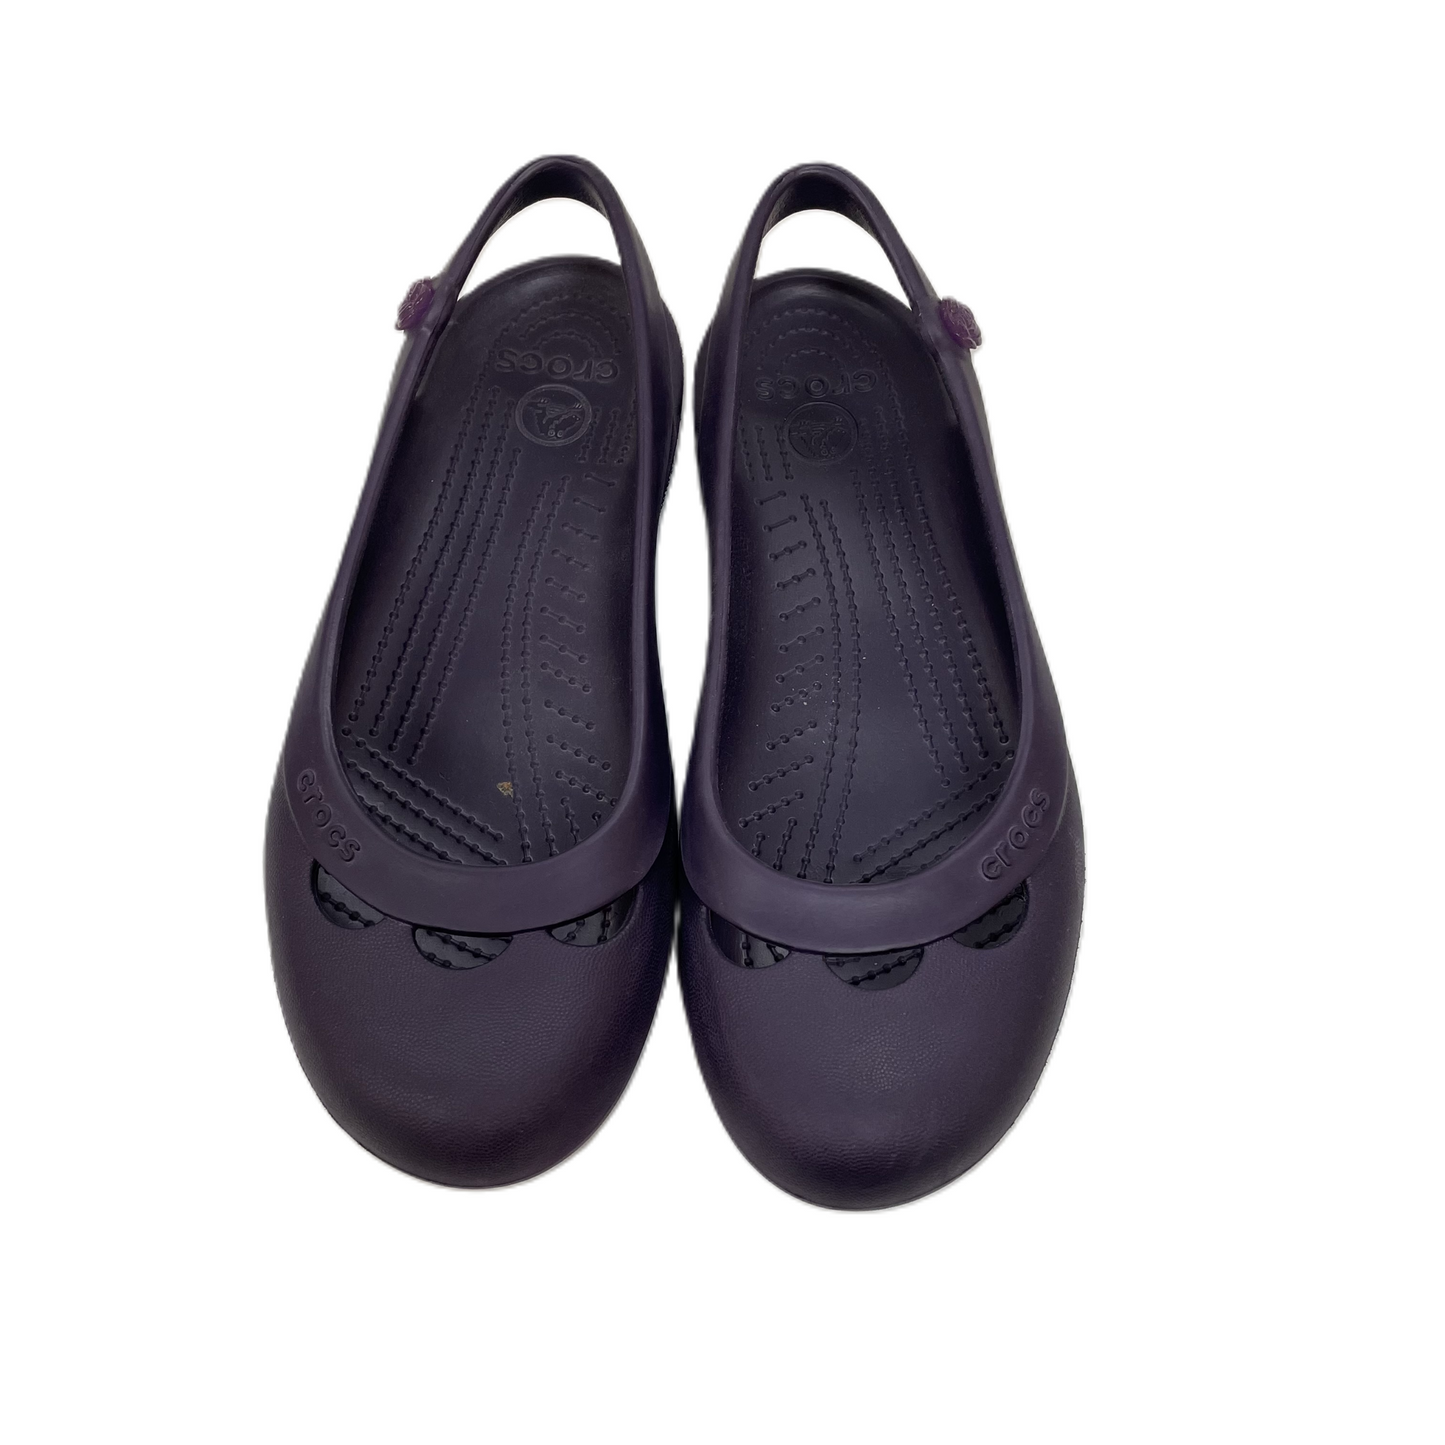 Purple Shoes Flats By Crocs, Size: 8